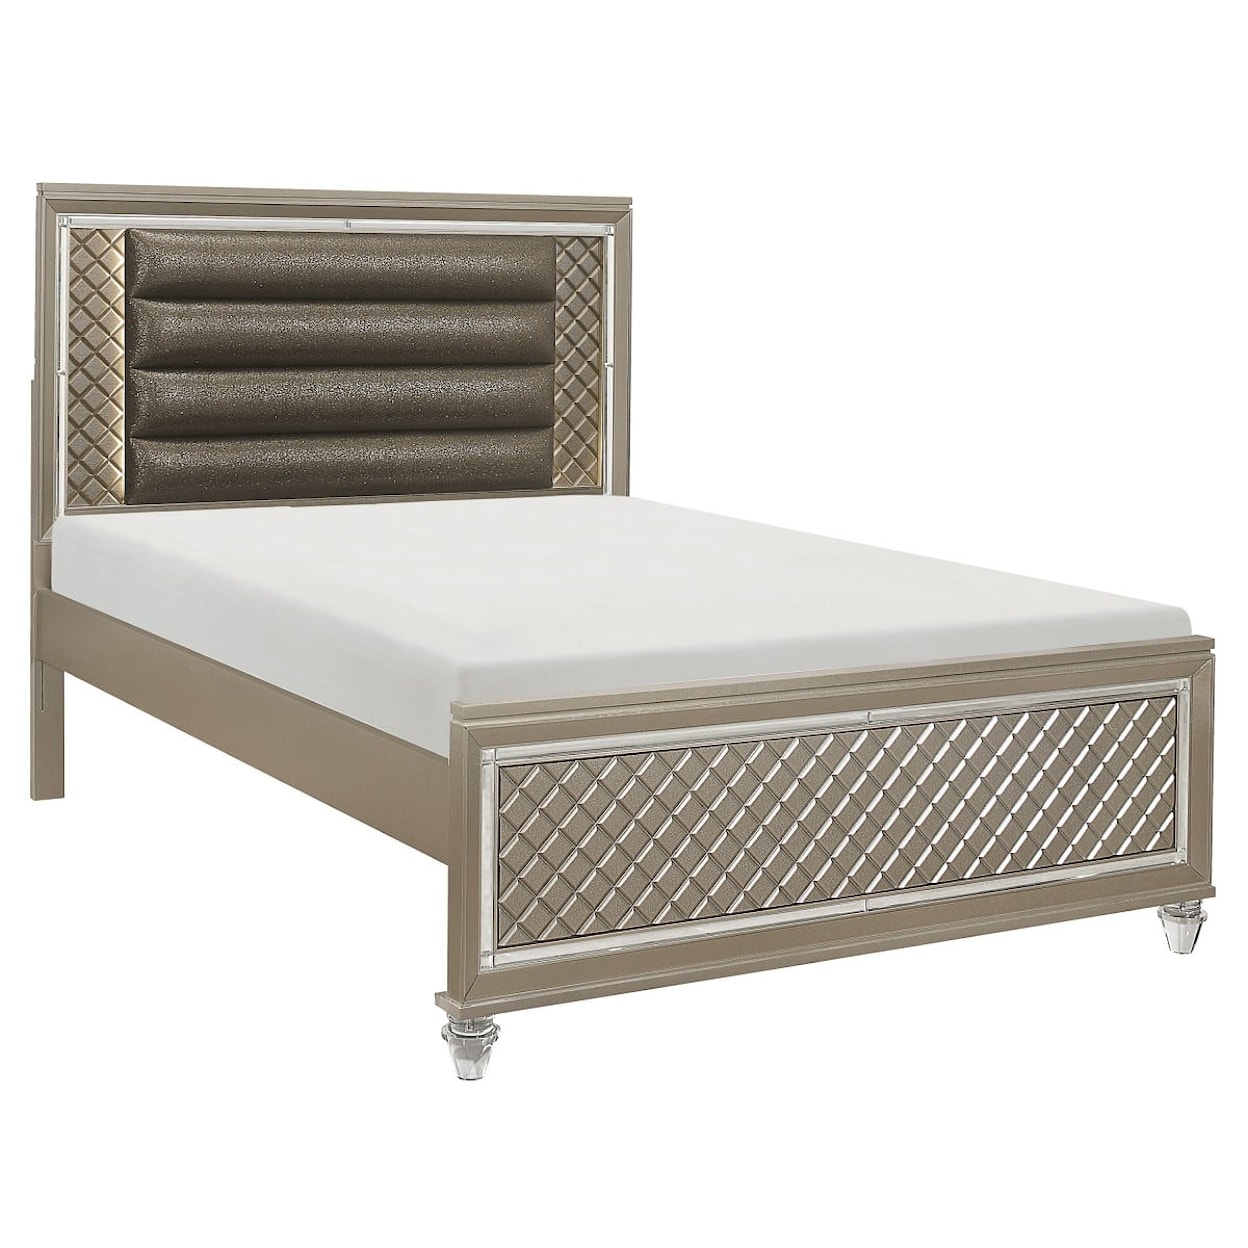 Homelegance Furniture Loudon Full Platform Bed